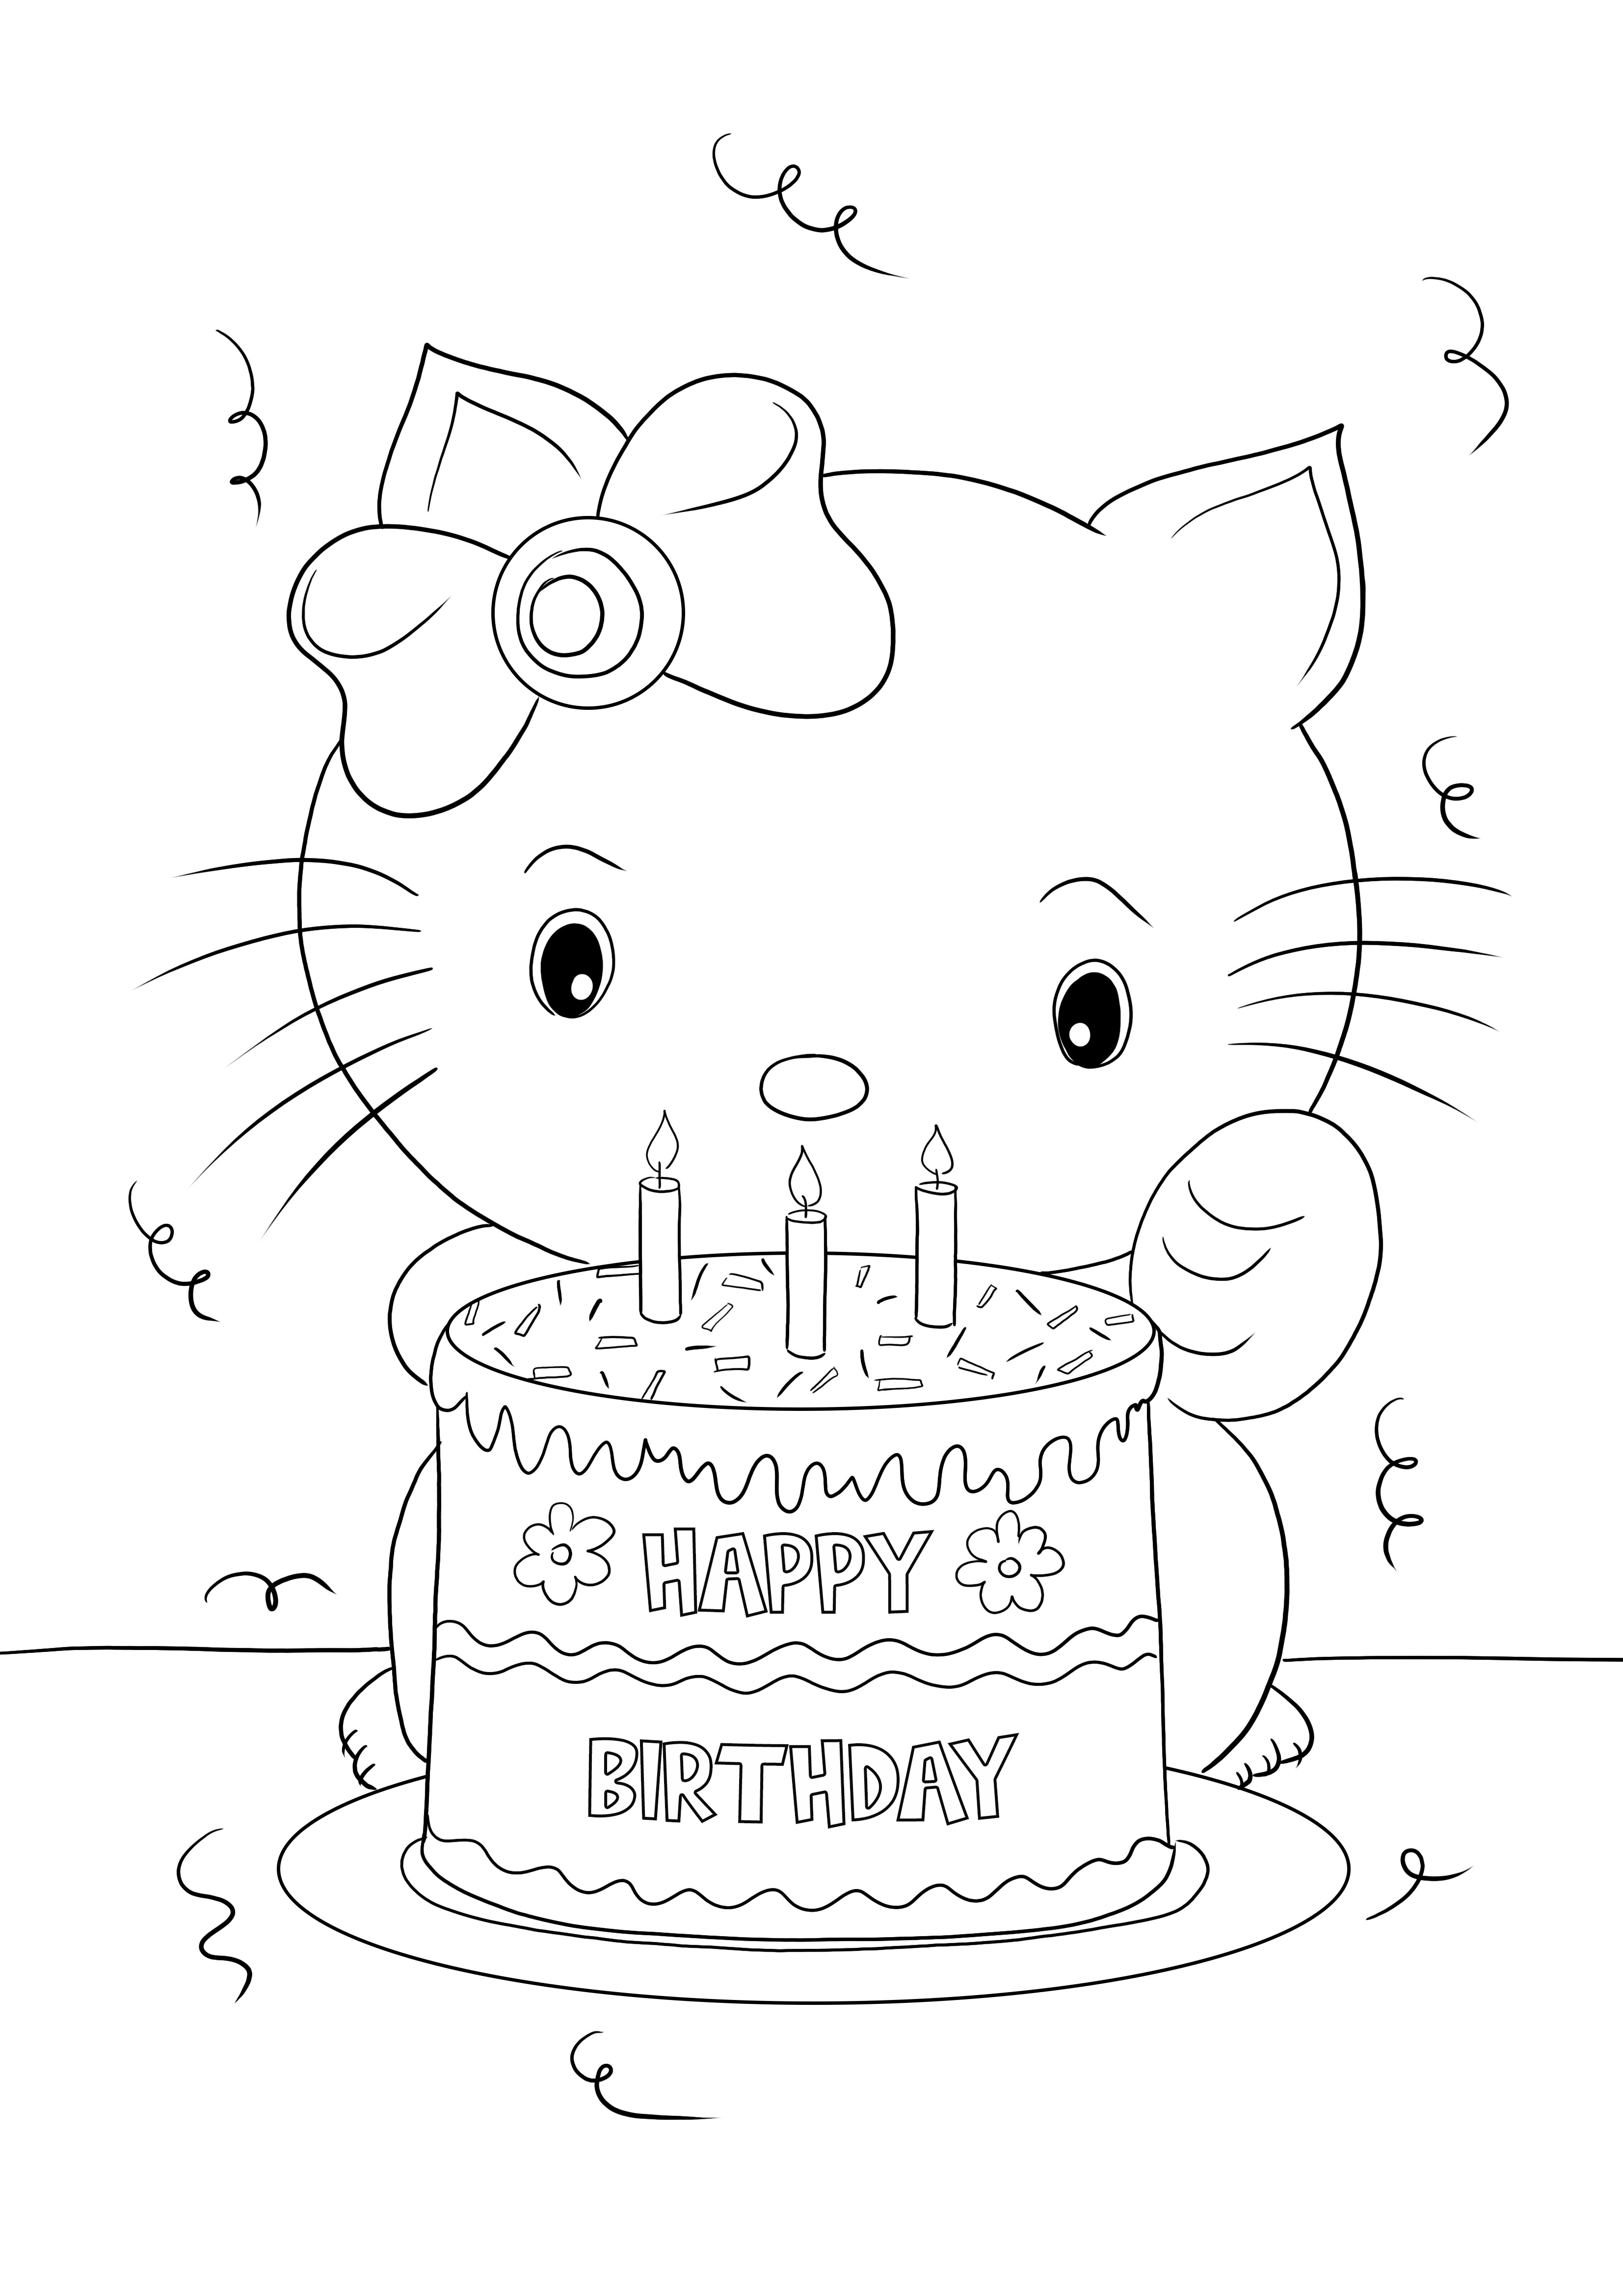 Impressão gratuita de Feliz Aniversário Hello Kitty para colorir e aprender com diversão